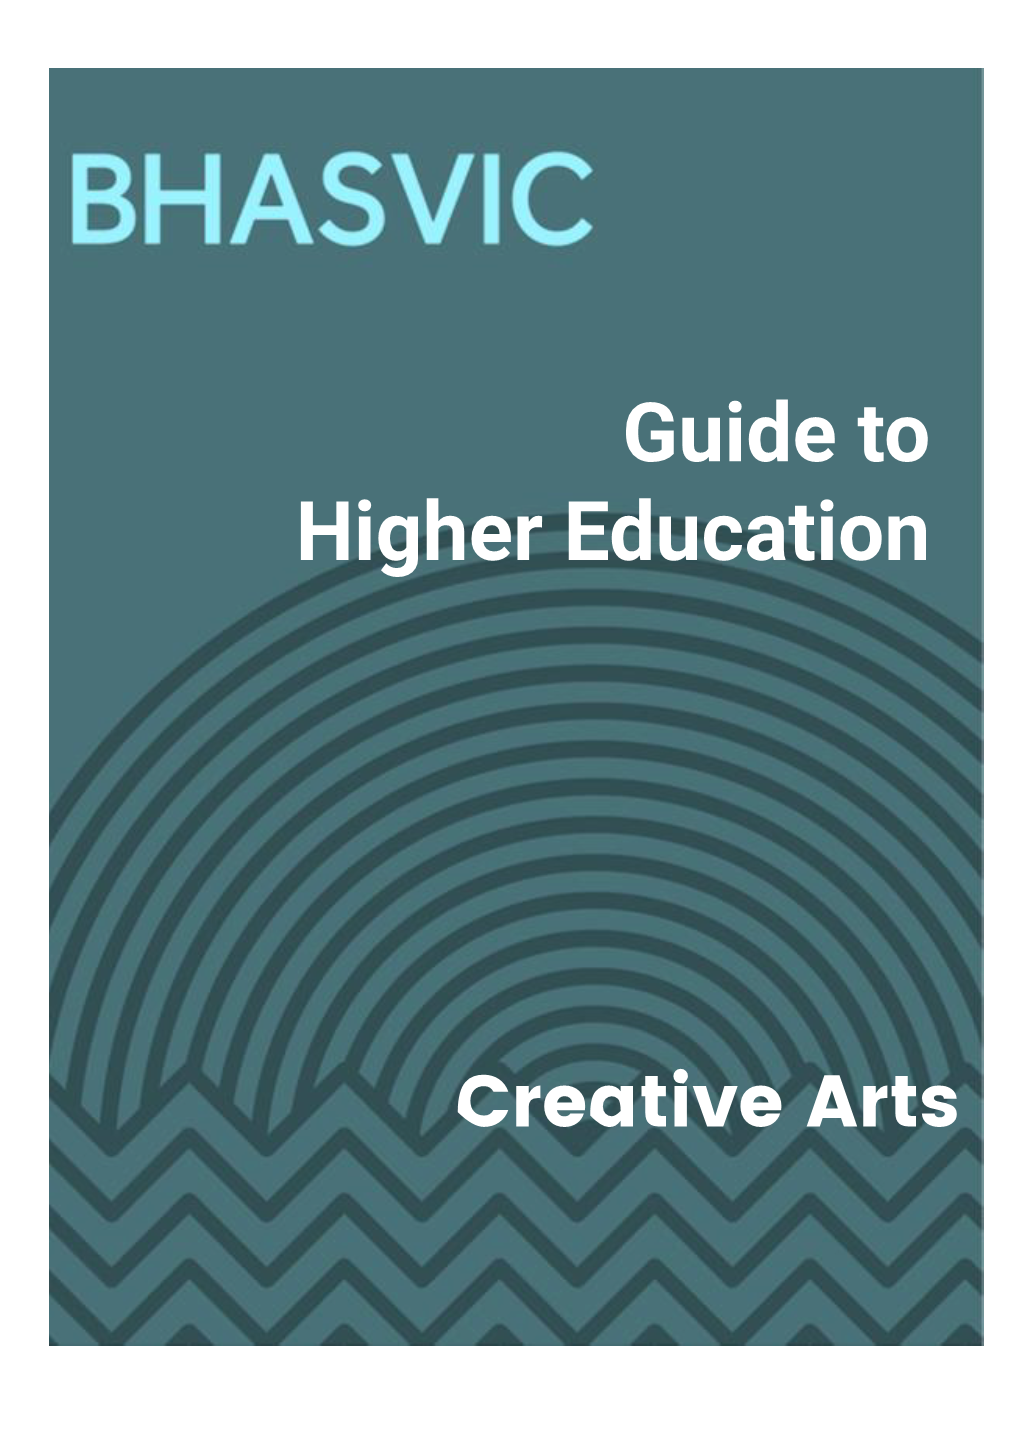 BHASVIC HE Guide Creative Arts 20-21